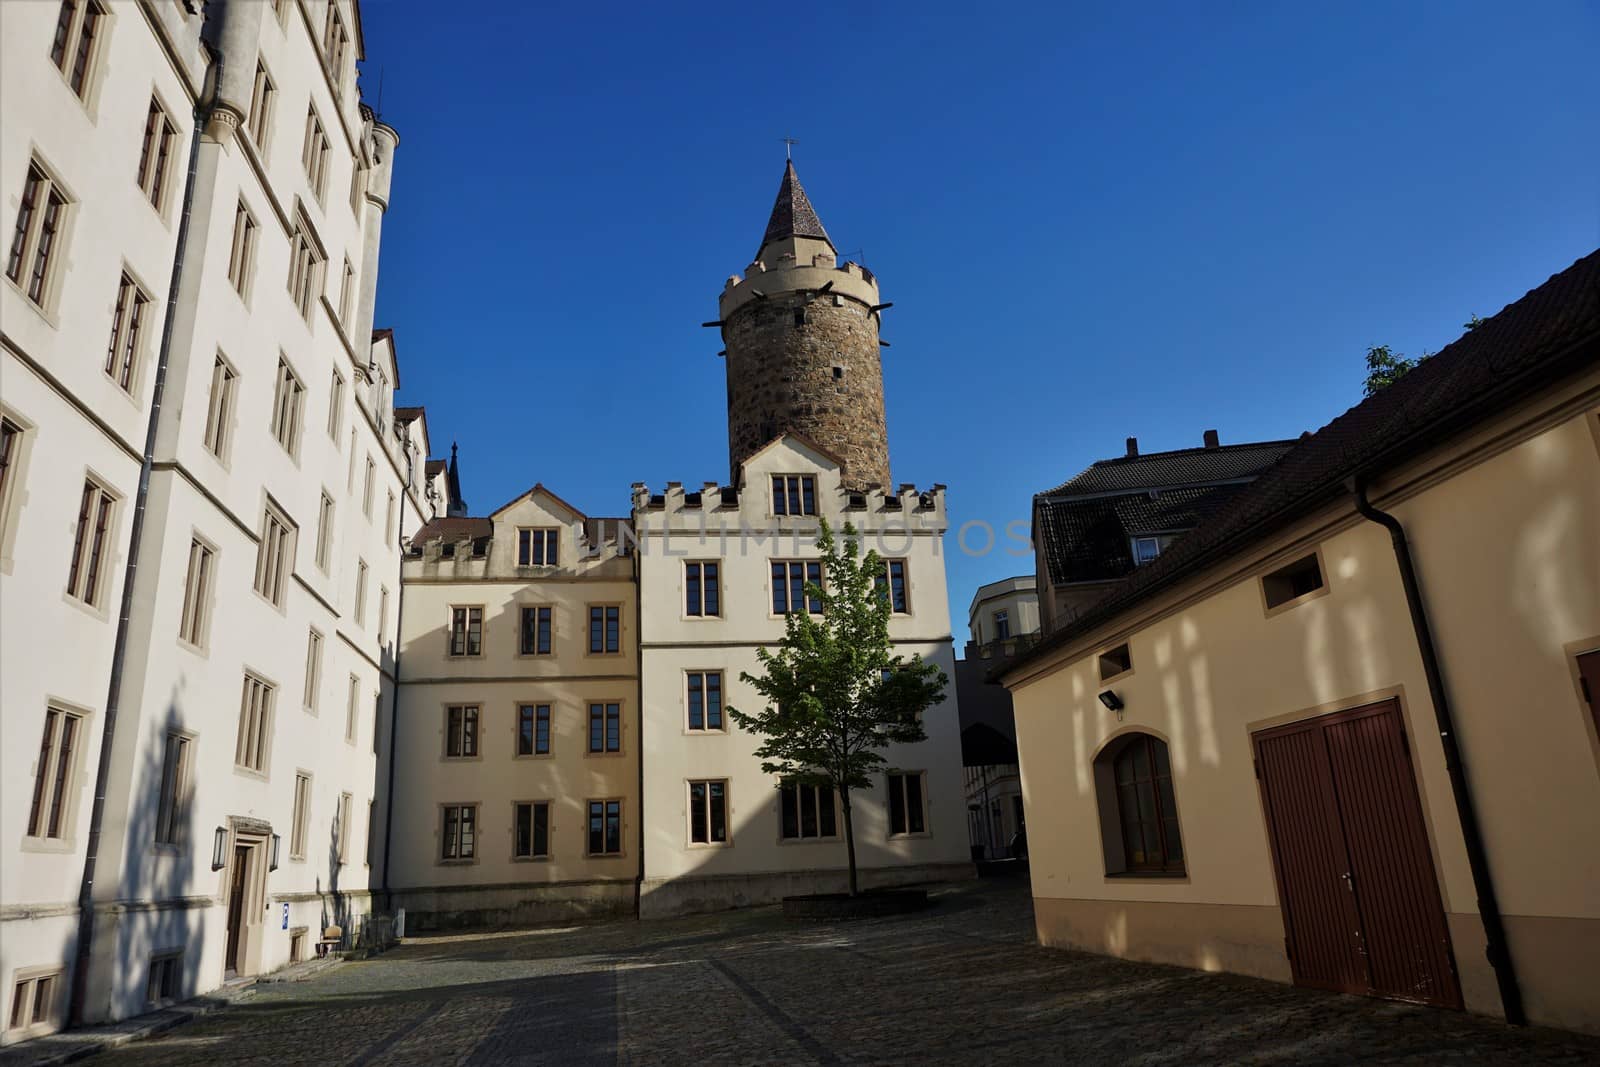 Wendish tower in Bautzen behind old caserne by pisces2386